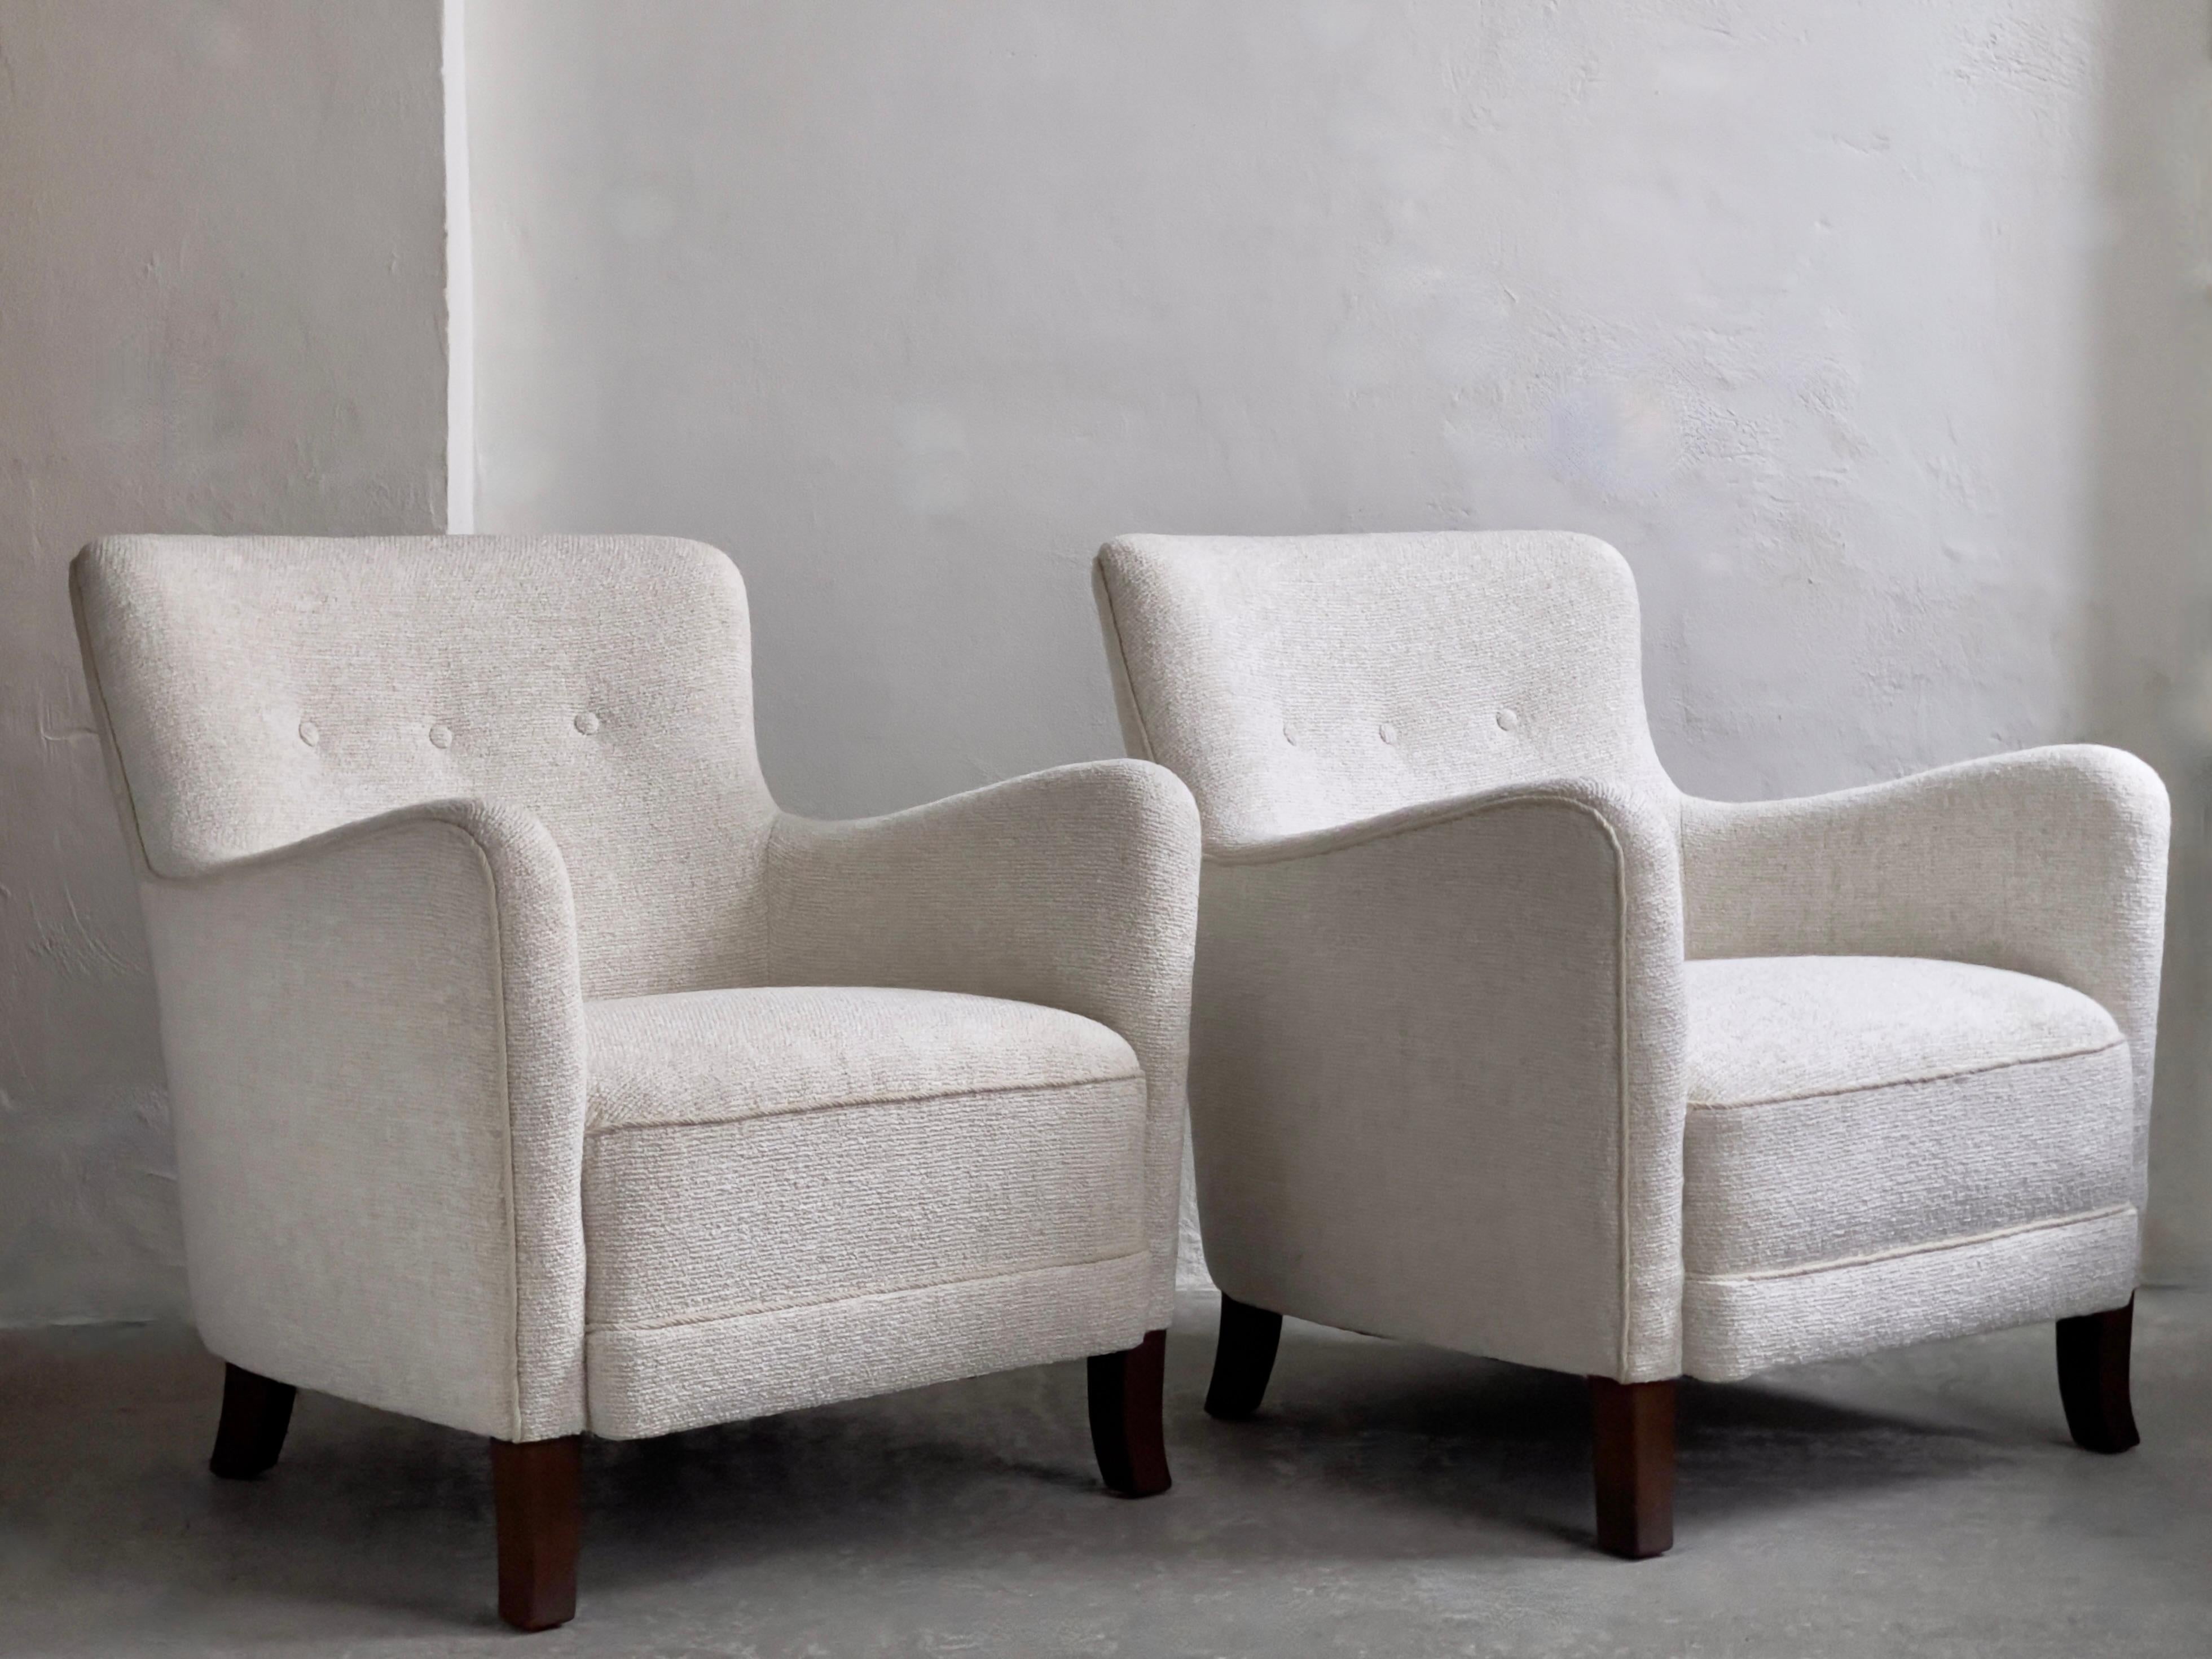 Sehr solides Paar vollständig restaurierter und neu gepolsterter dänischer Tischler-Sessel aus den 1930er Jahren mit zeitgenössischem Sacho/Kvadrat-Stoff, entworfen von Vincent van Duysen und Anna Vilhelmine Ebbesen's .

In den Annalen des dänischen